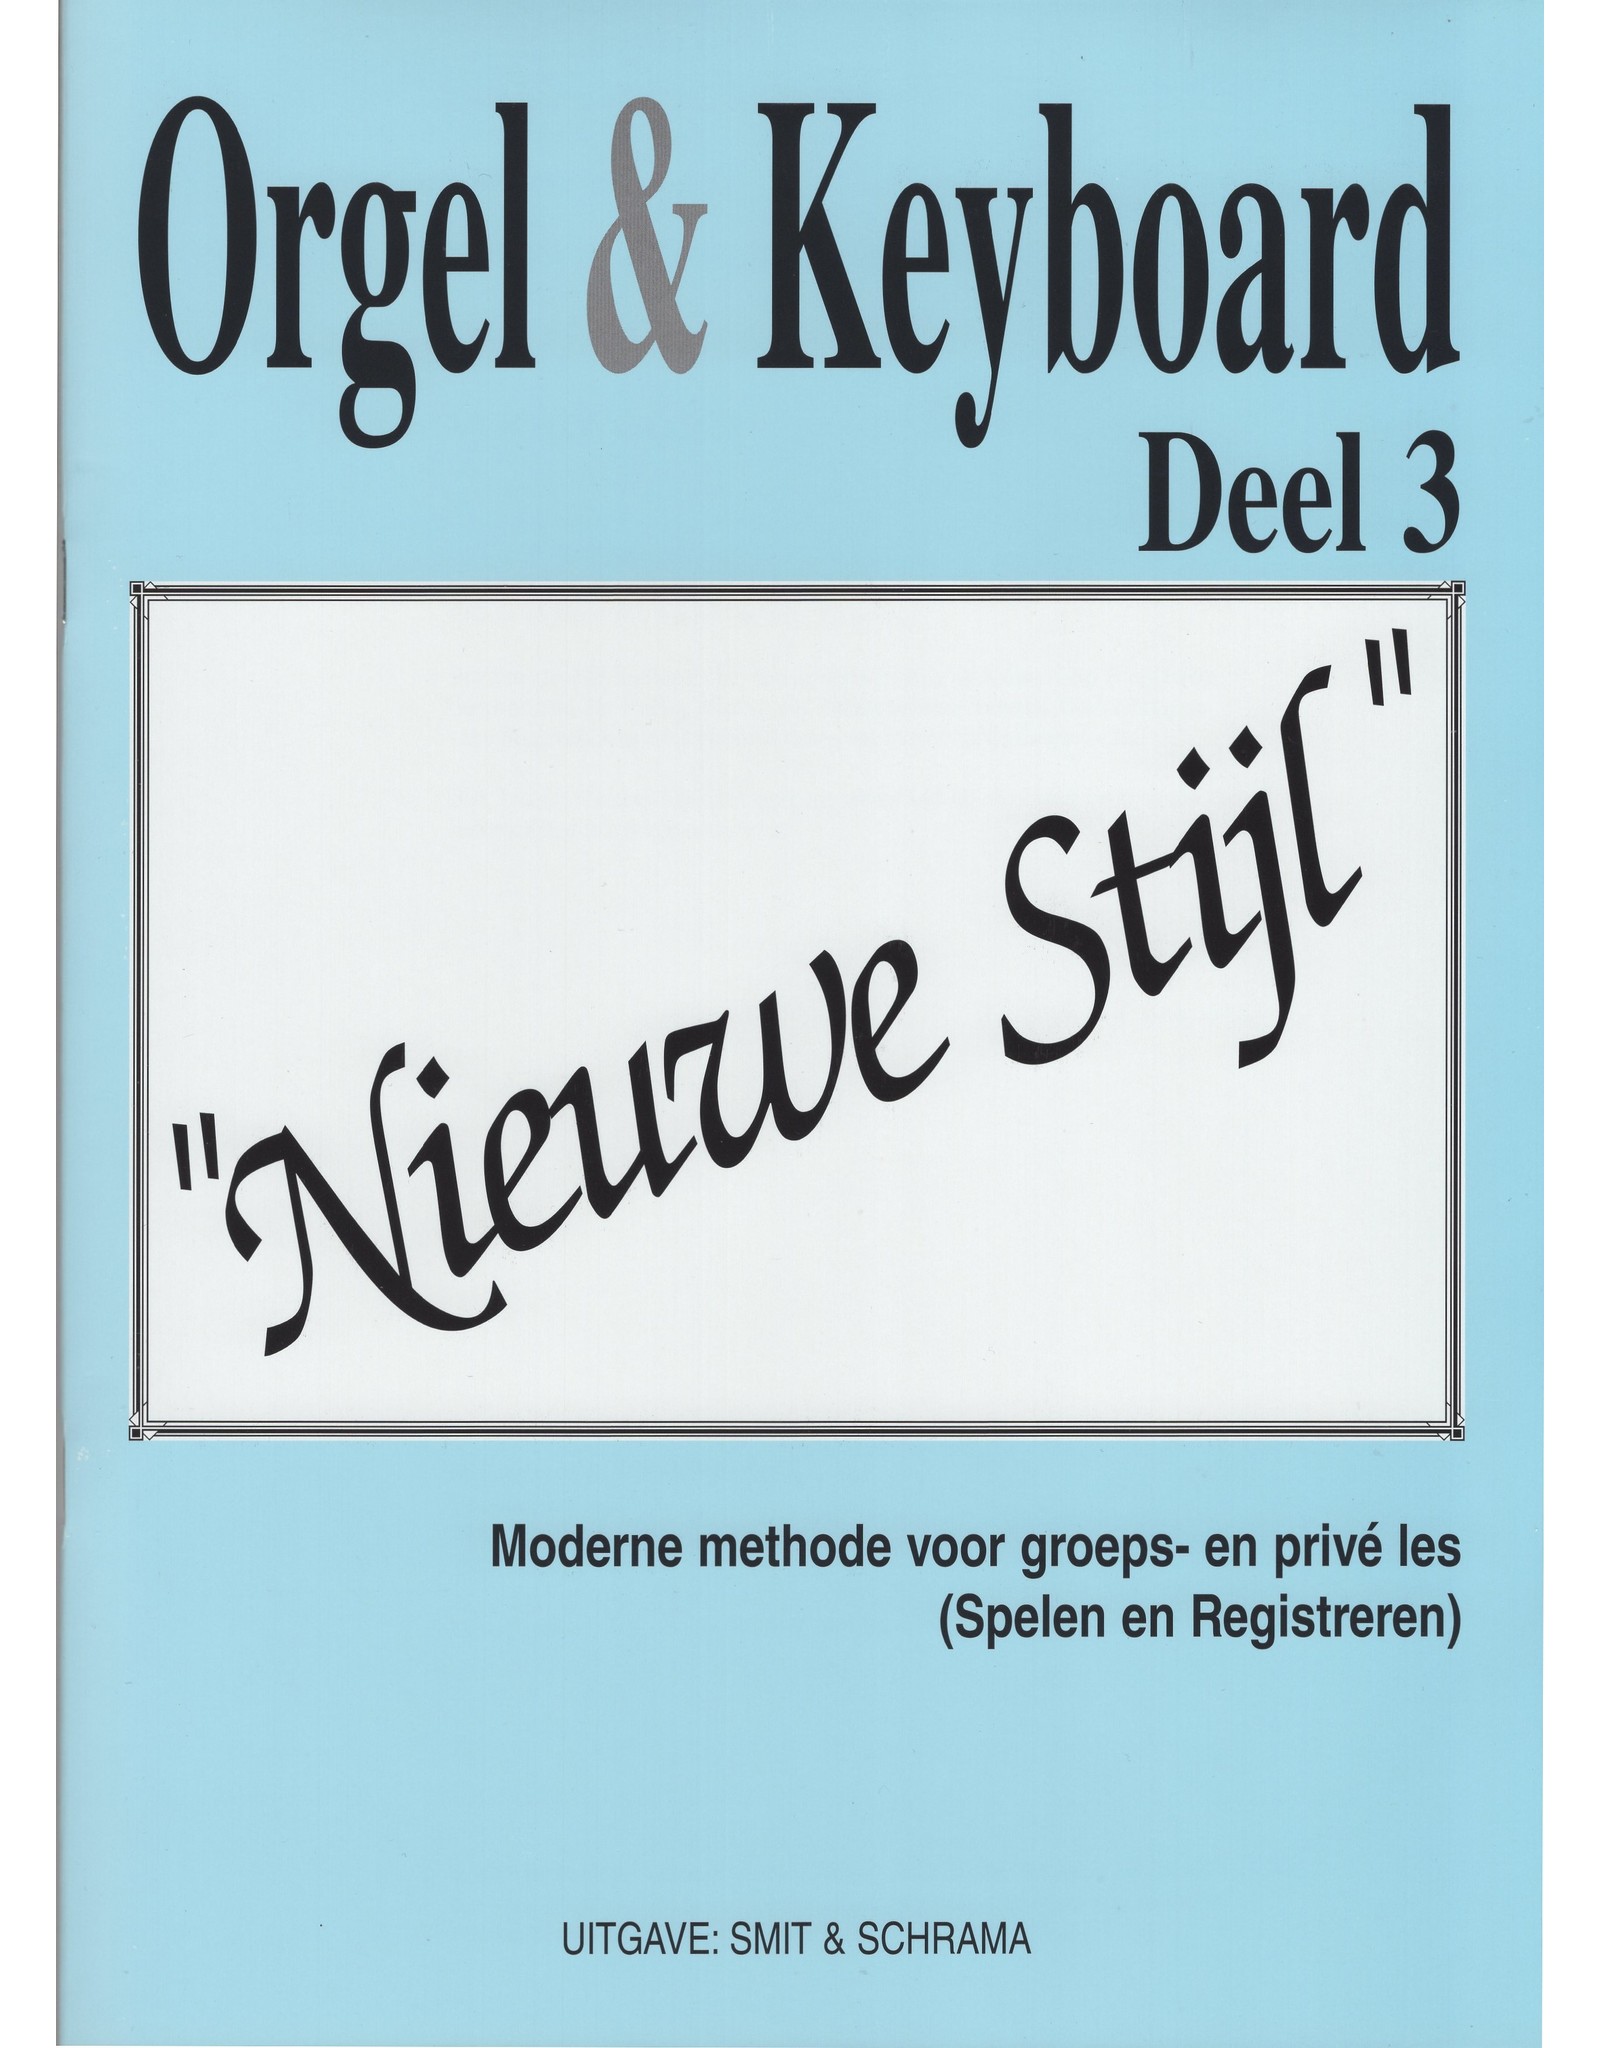 Orgel en Keyboard Orgel & Keyboard ”Nieuwe Stijl” Deel 3